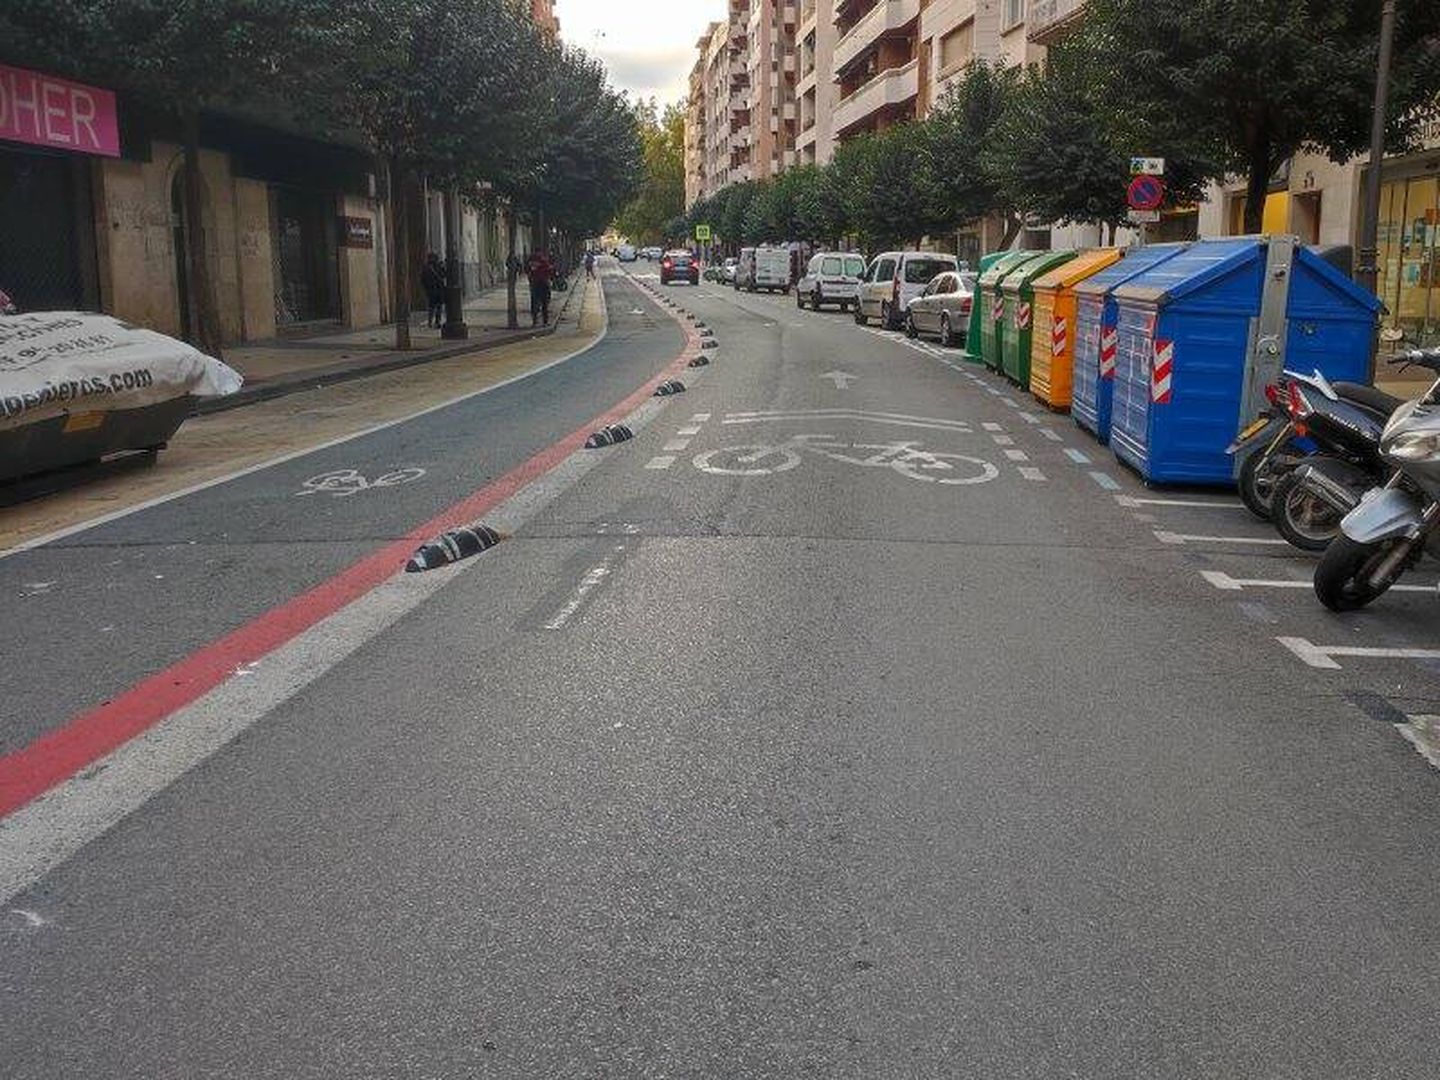 Implementación del carril bici en las carreteras del centro de Logroño. (L.V.)